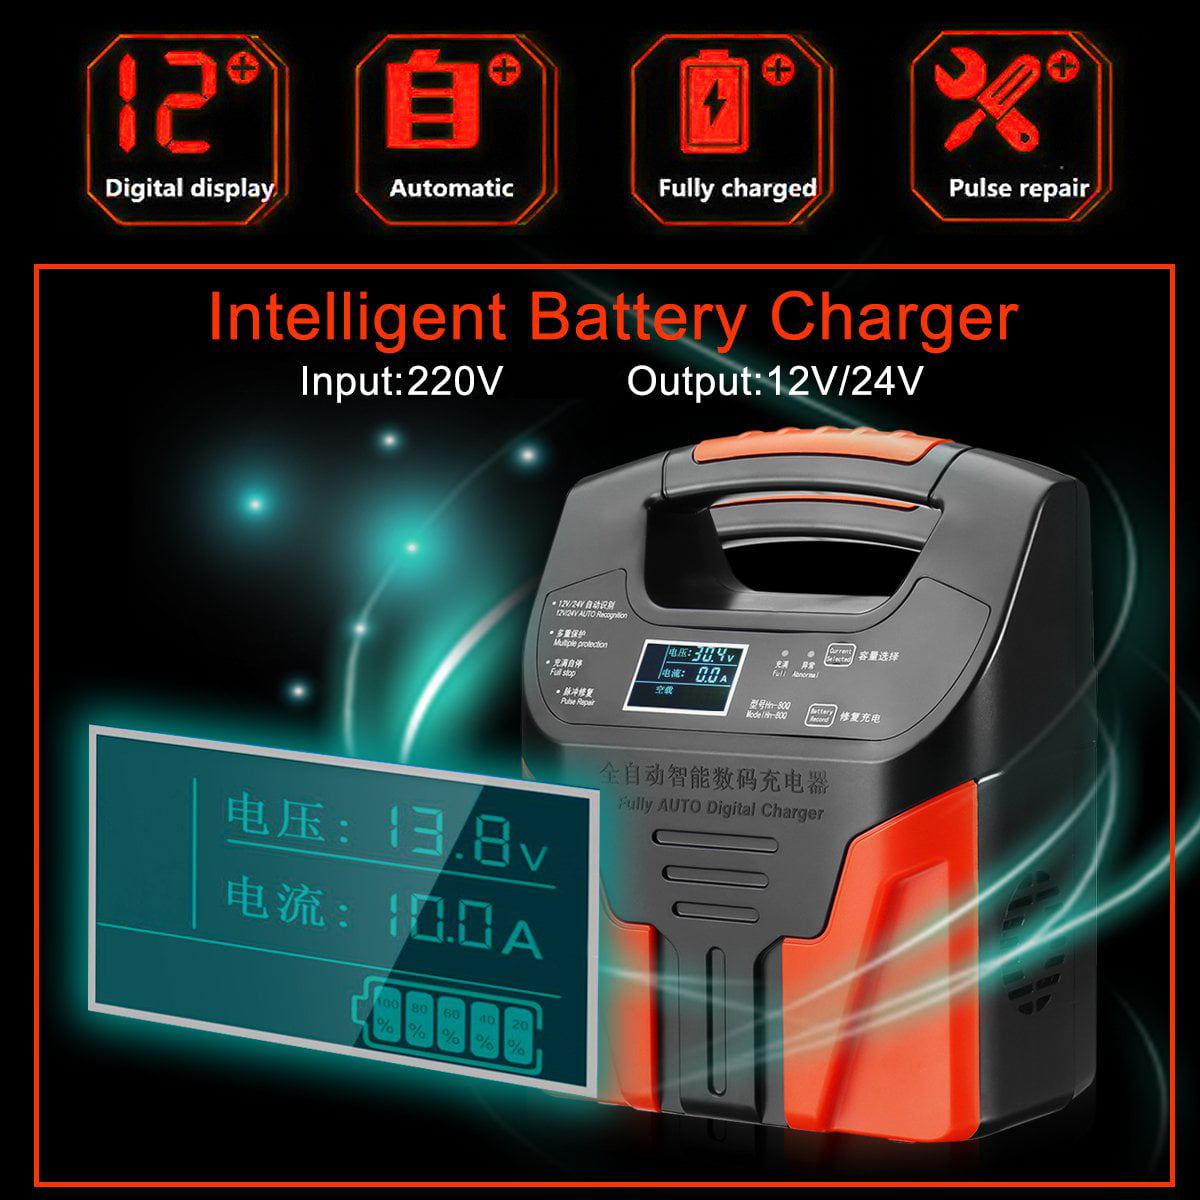 PowerSmart HP1202L2 Chargeur de batterie avec adaptateur CA pour batterie 24 V Lithium Ions pour vélo électrique/vélo électrique HP1202L2 3 broches 